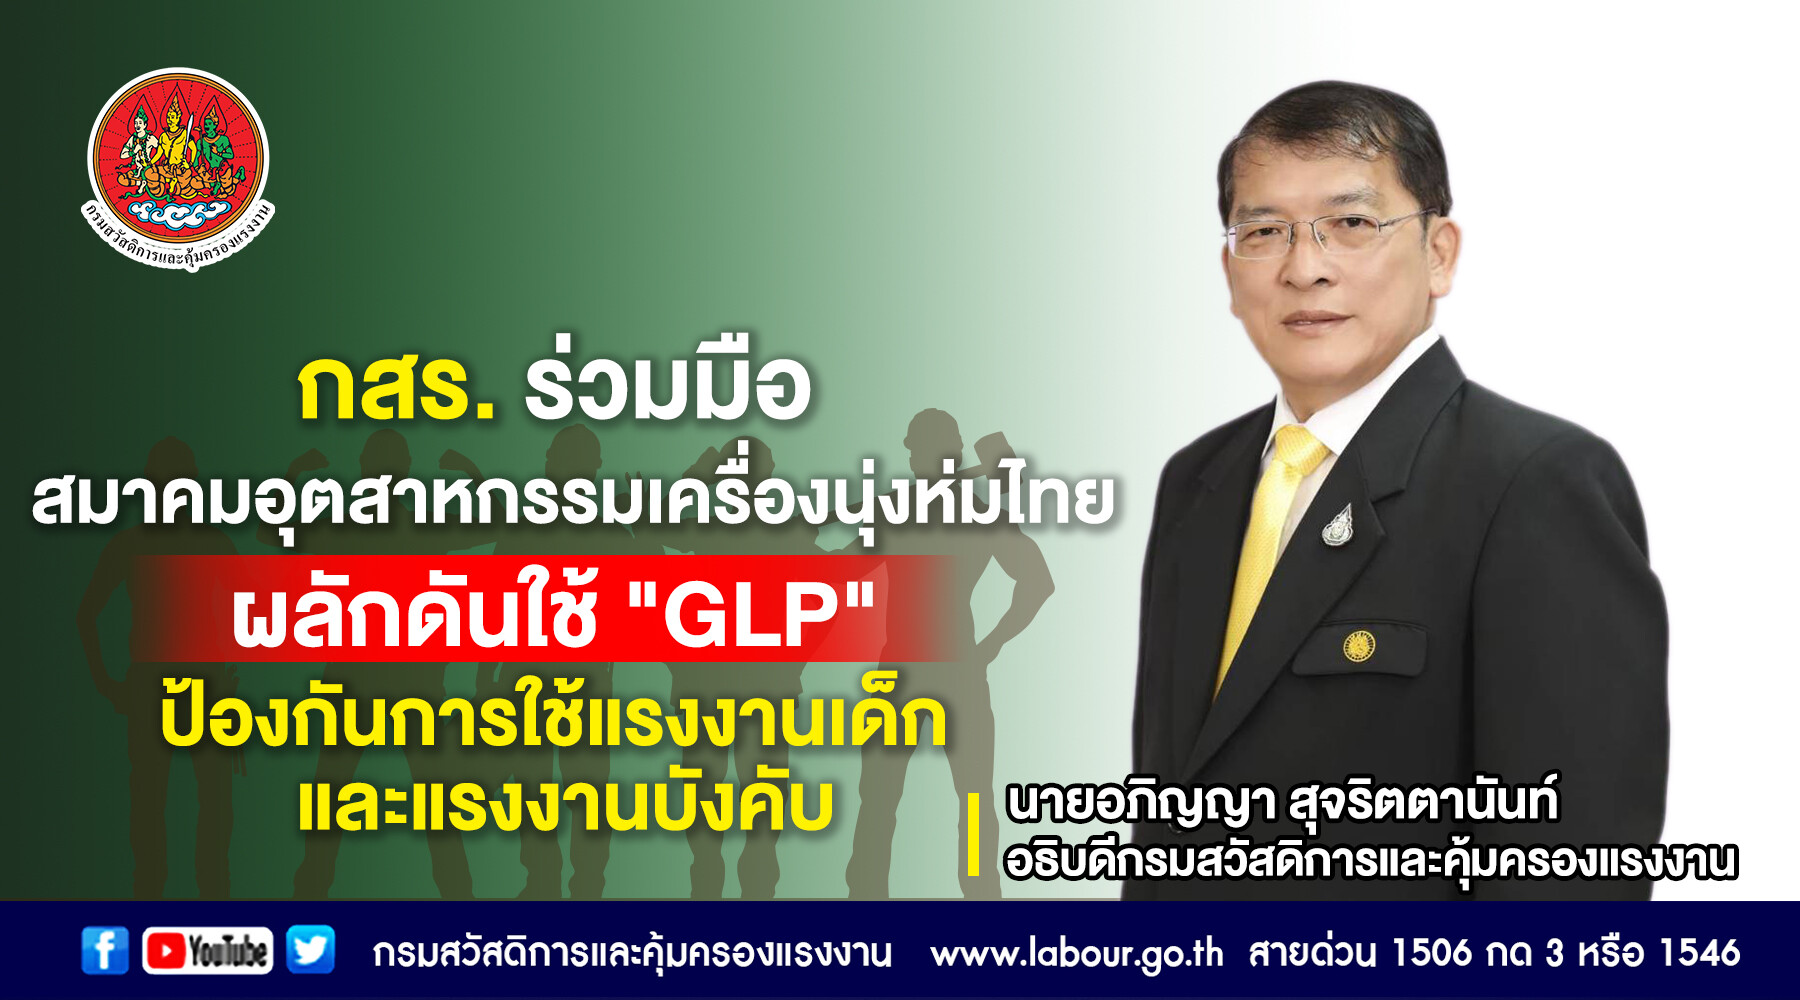 กสร. ร่วมกับสมาคมอุตสาหกรรมเครื่องนุ่งห่มไทย จับตา 'ทิศทางการค้าโลก' นำ GLP มาใช้ป้องกันการใช้แรงงานเด็กและแรงงานบังคับ